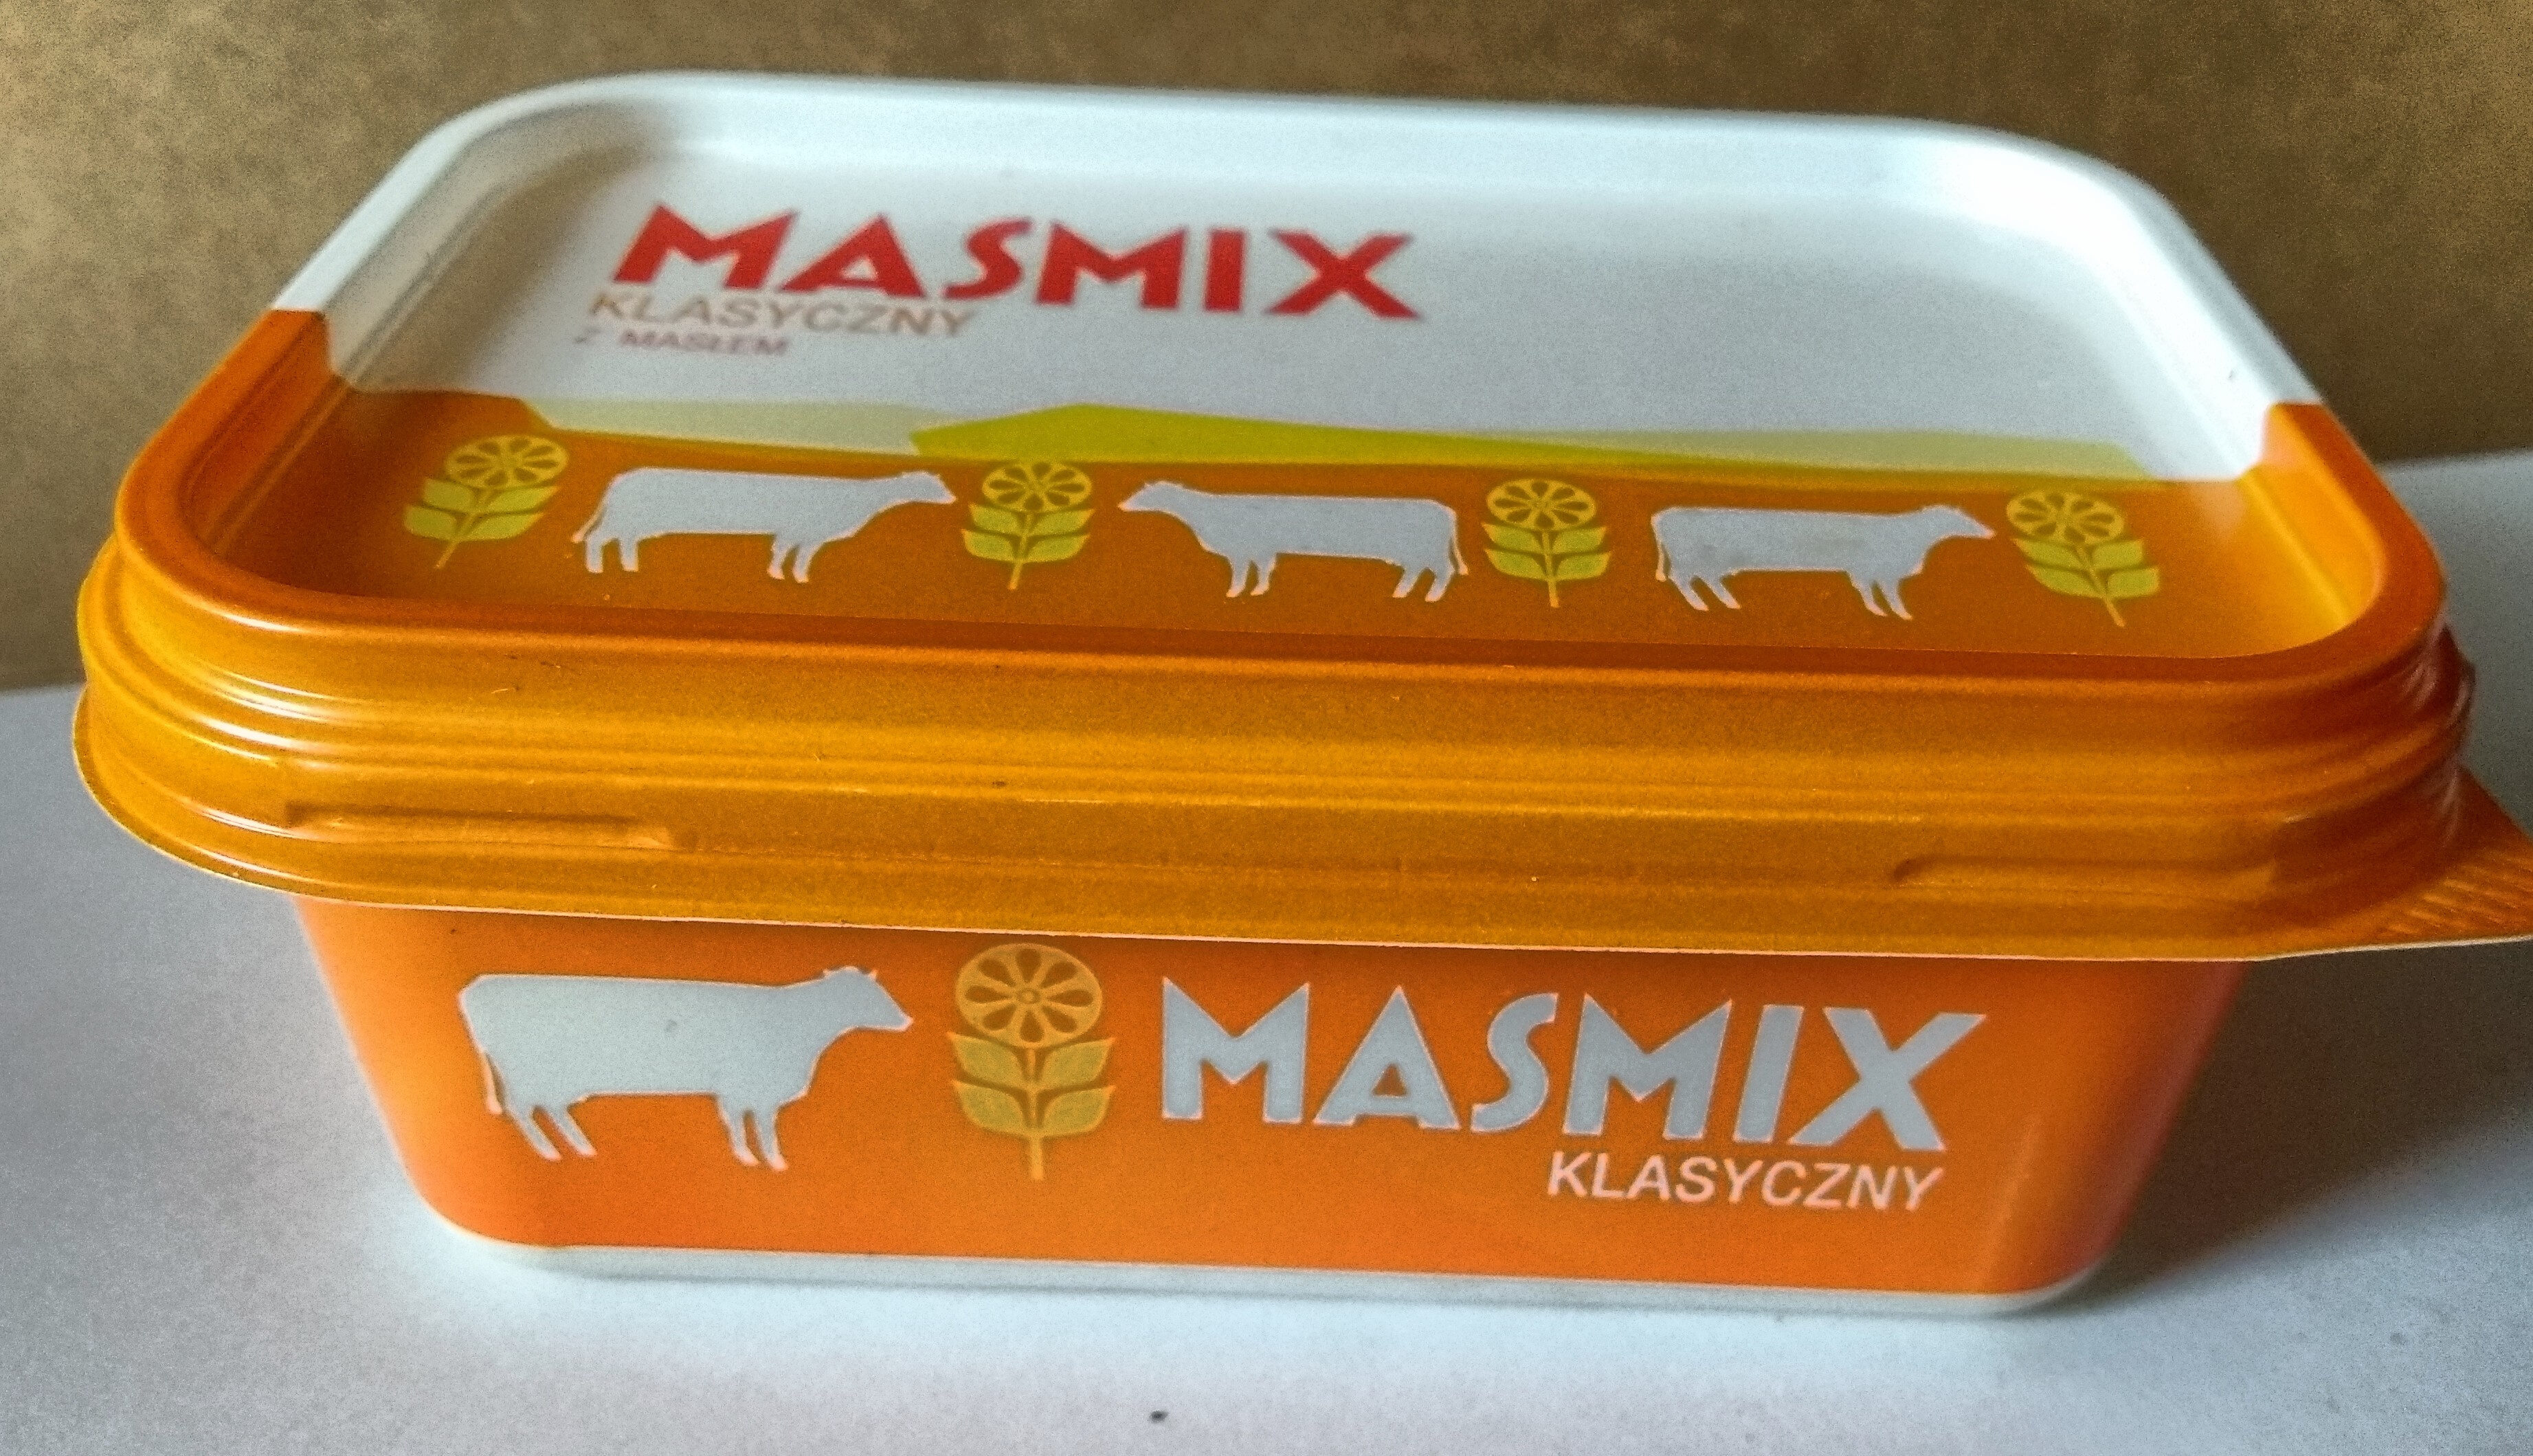 Masmix klasyczny z masłem - نتاج - pl